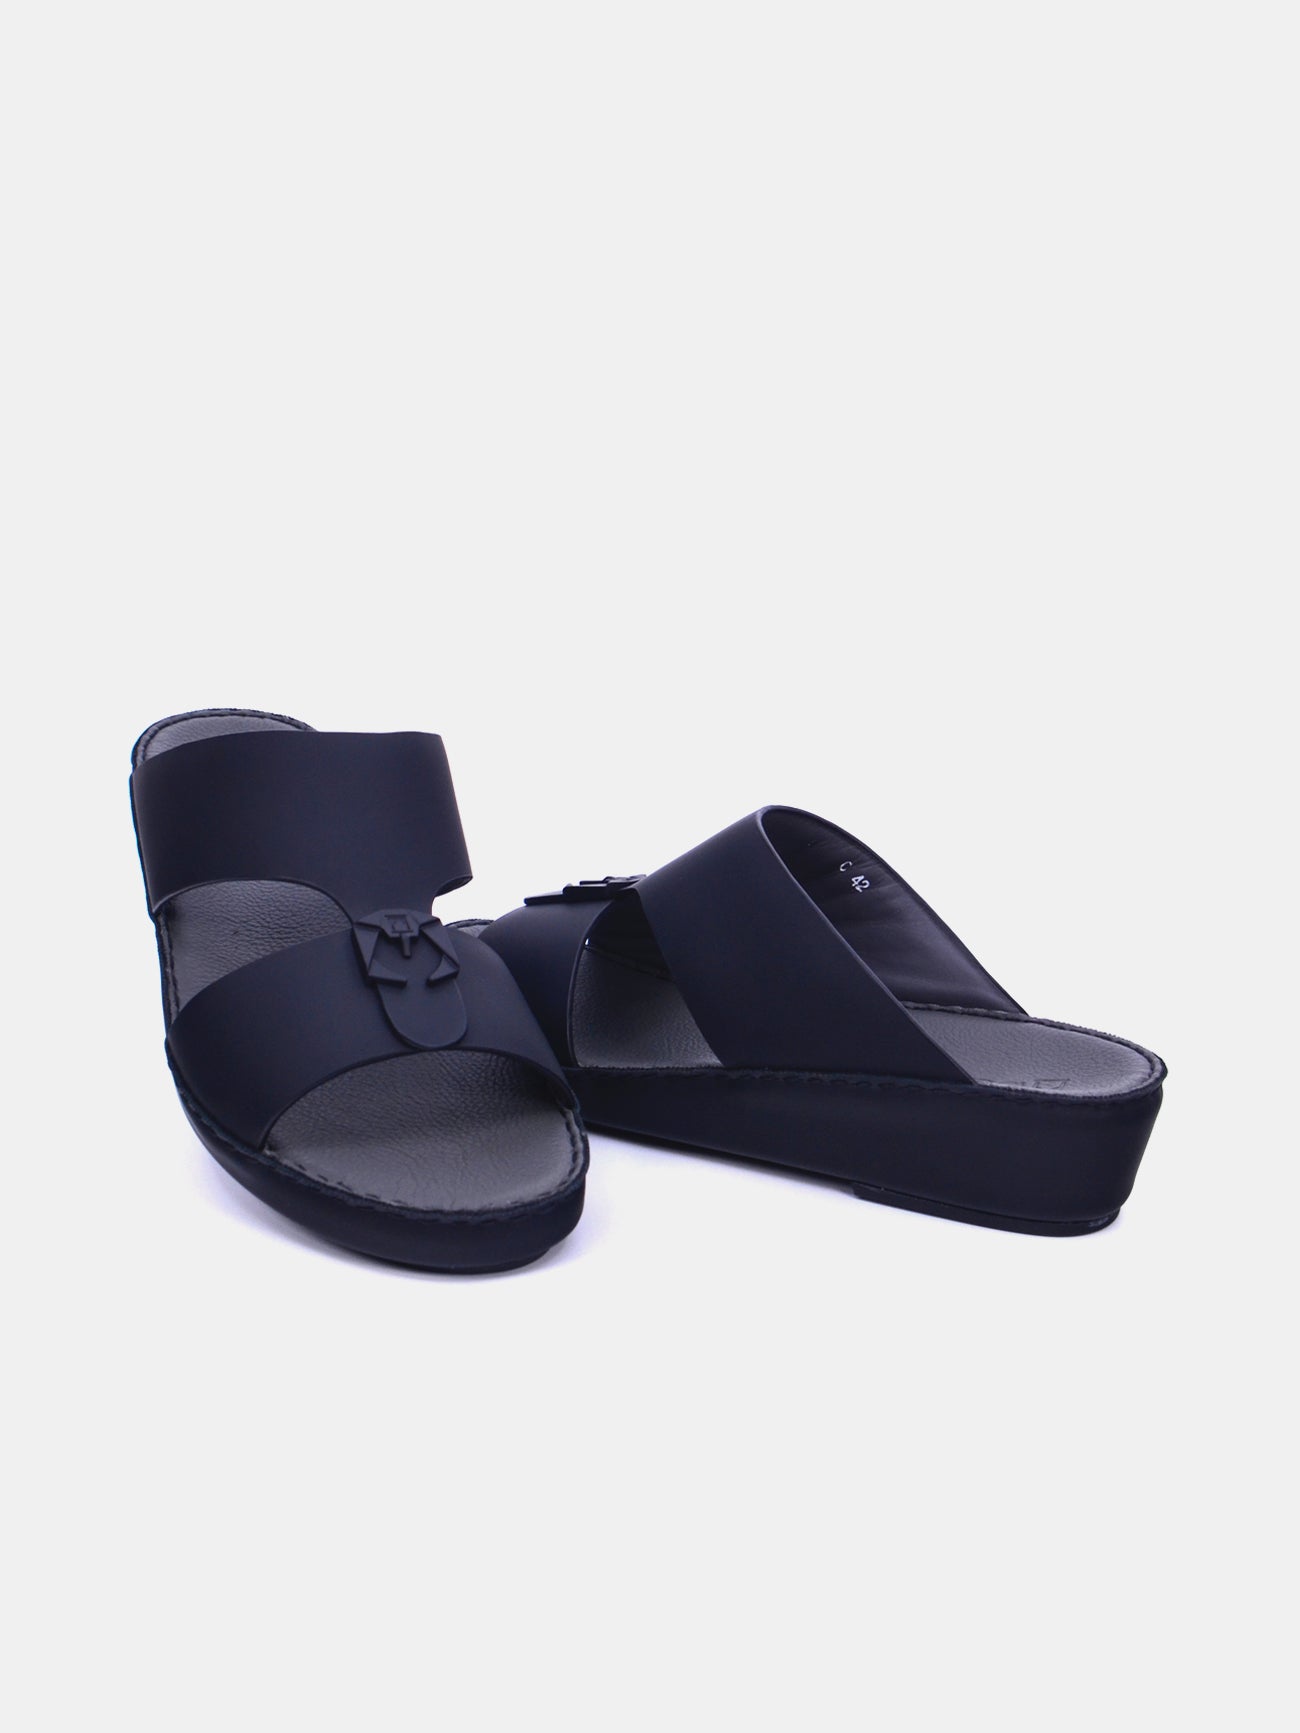 Barjeel Uno Men's Sandals #color_Black